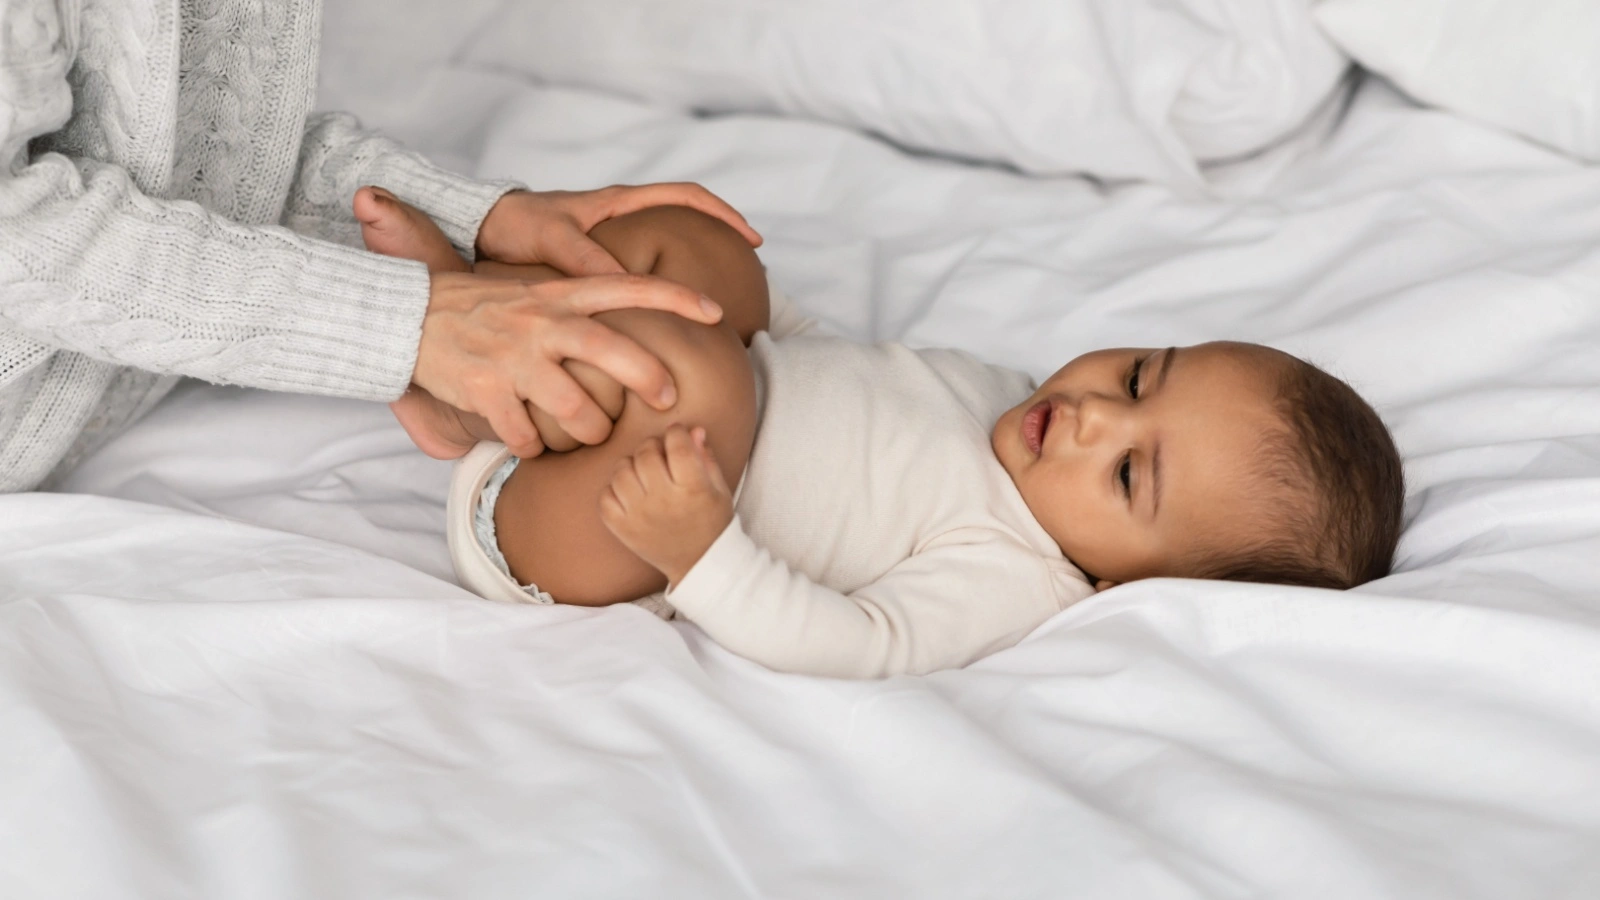 ما هي أسباب الغازات عند الرضع؟ وكيف يمكن علاجها والوقاية منها؟